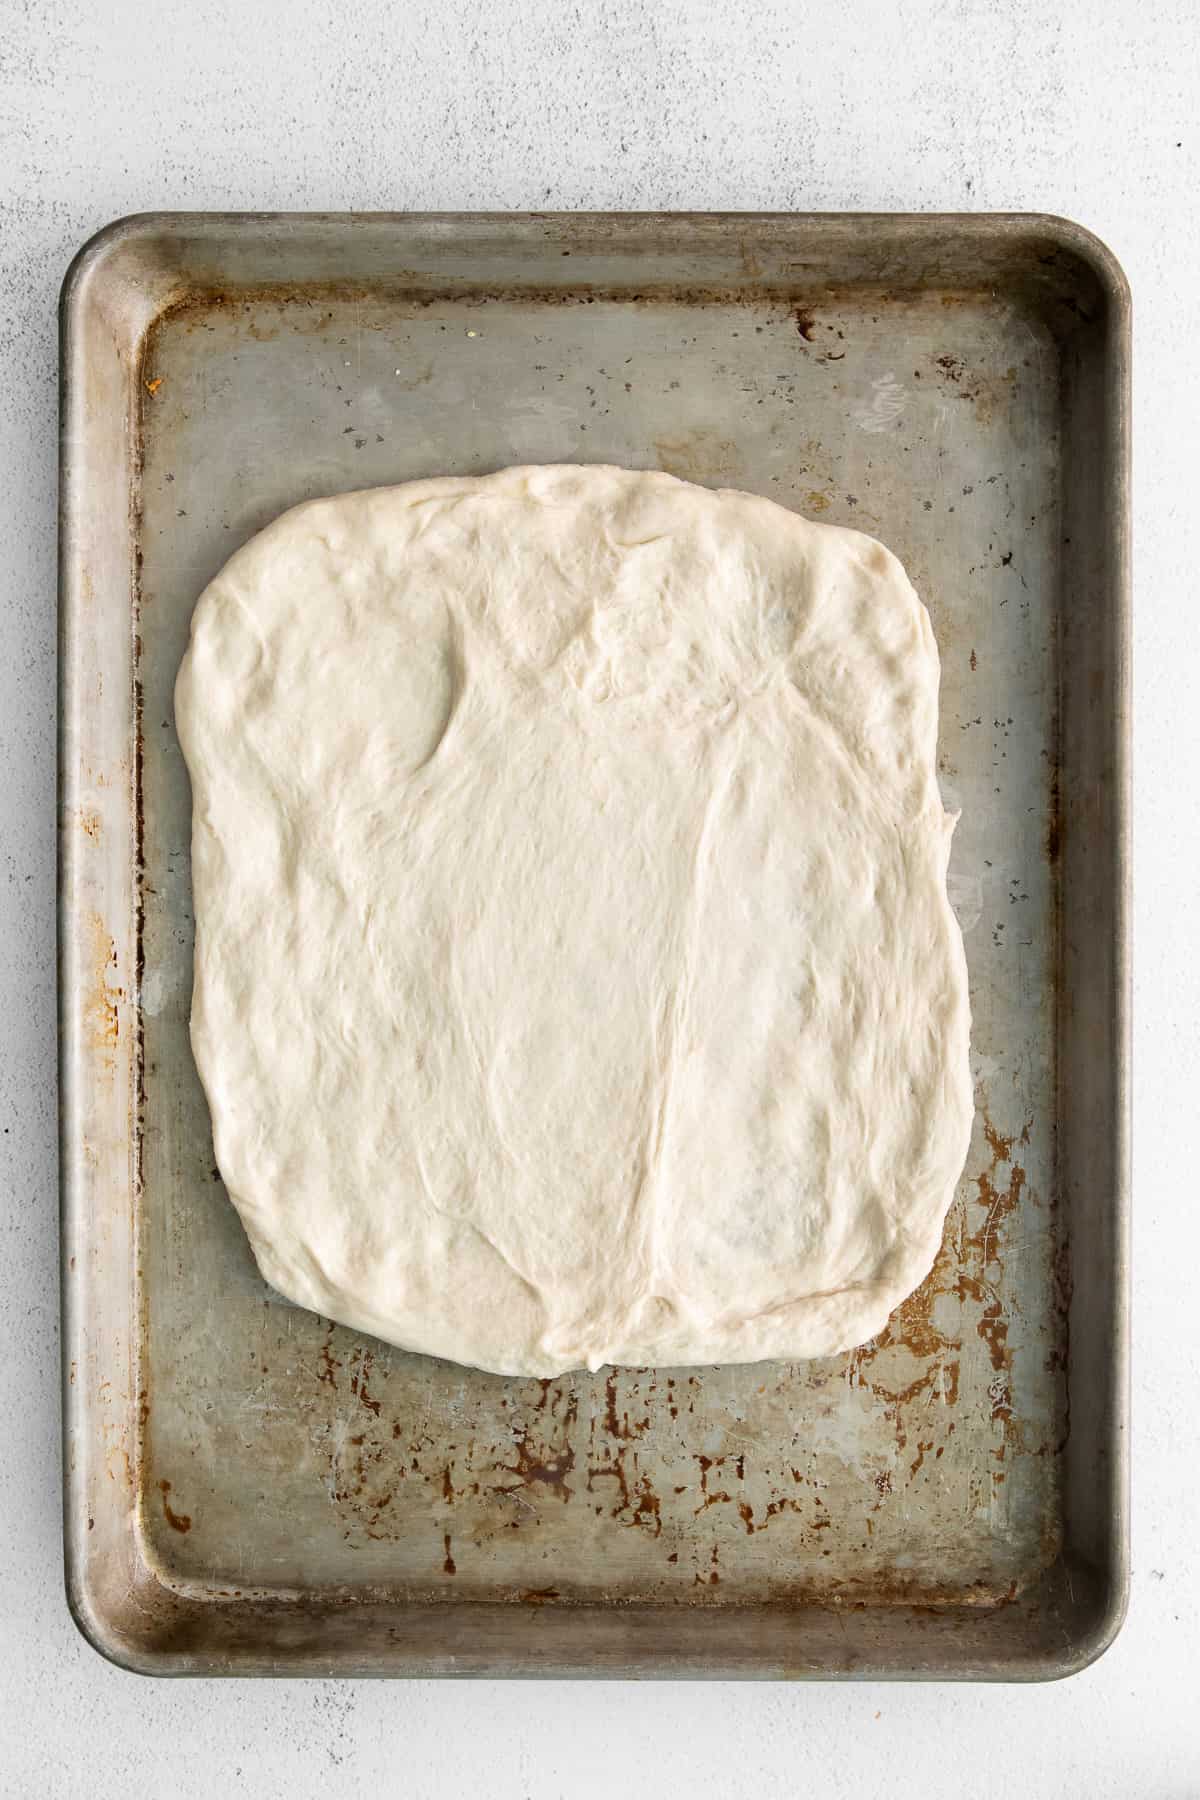 Cheese bread dough on a baking sheet.